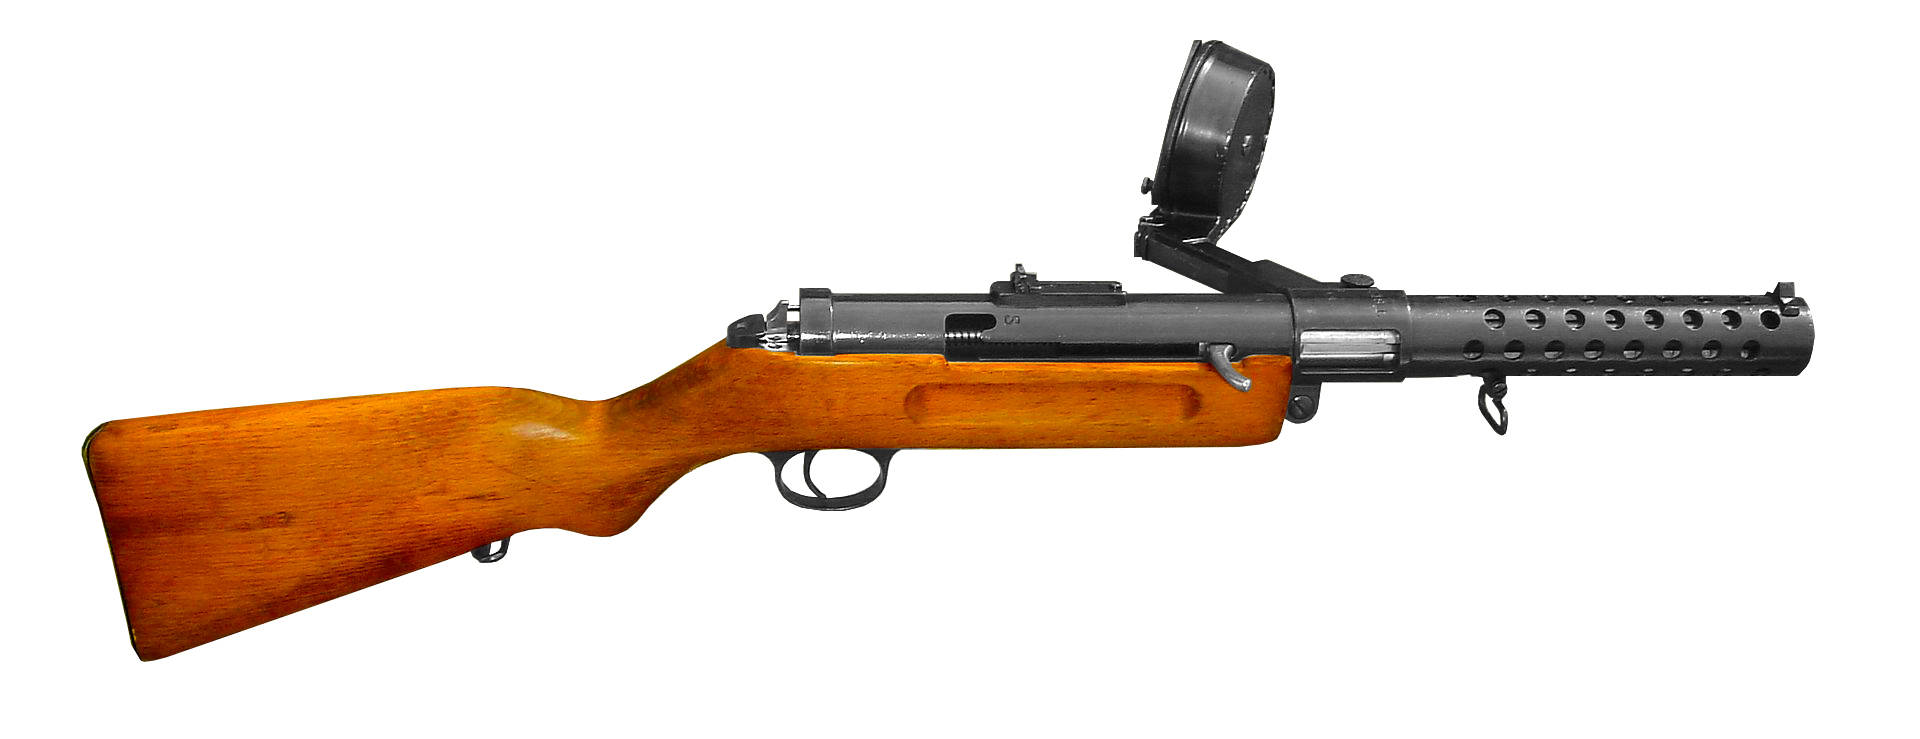 92×33毫米中长步枪弹,用于全新的maschinenpistole 43/mp 43,此枪后